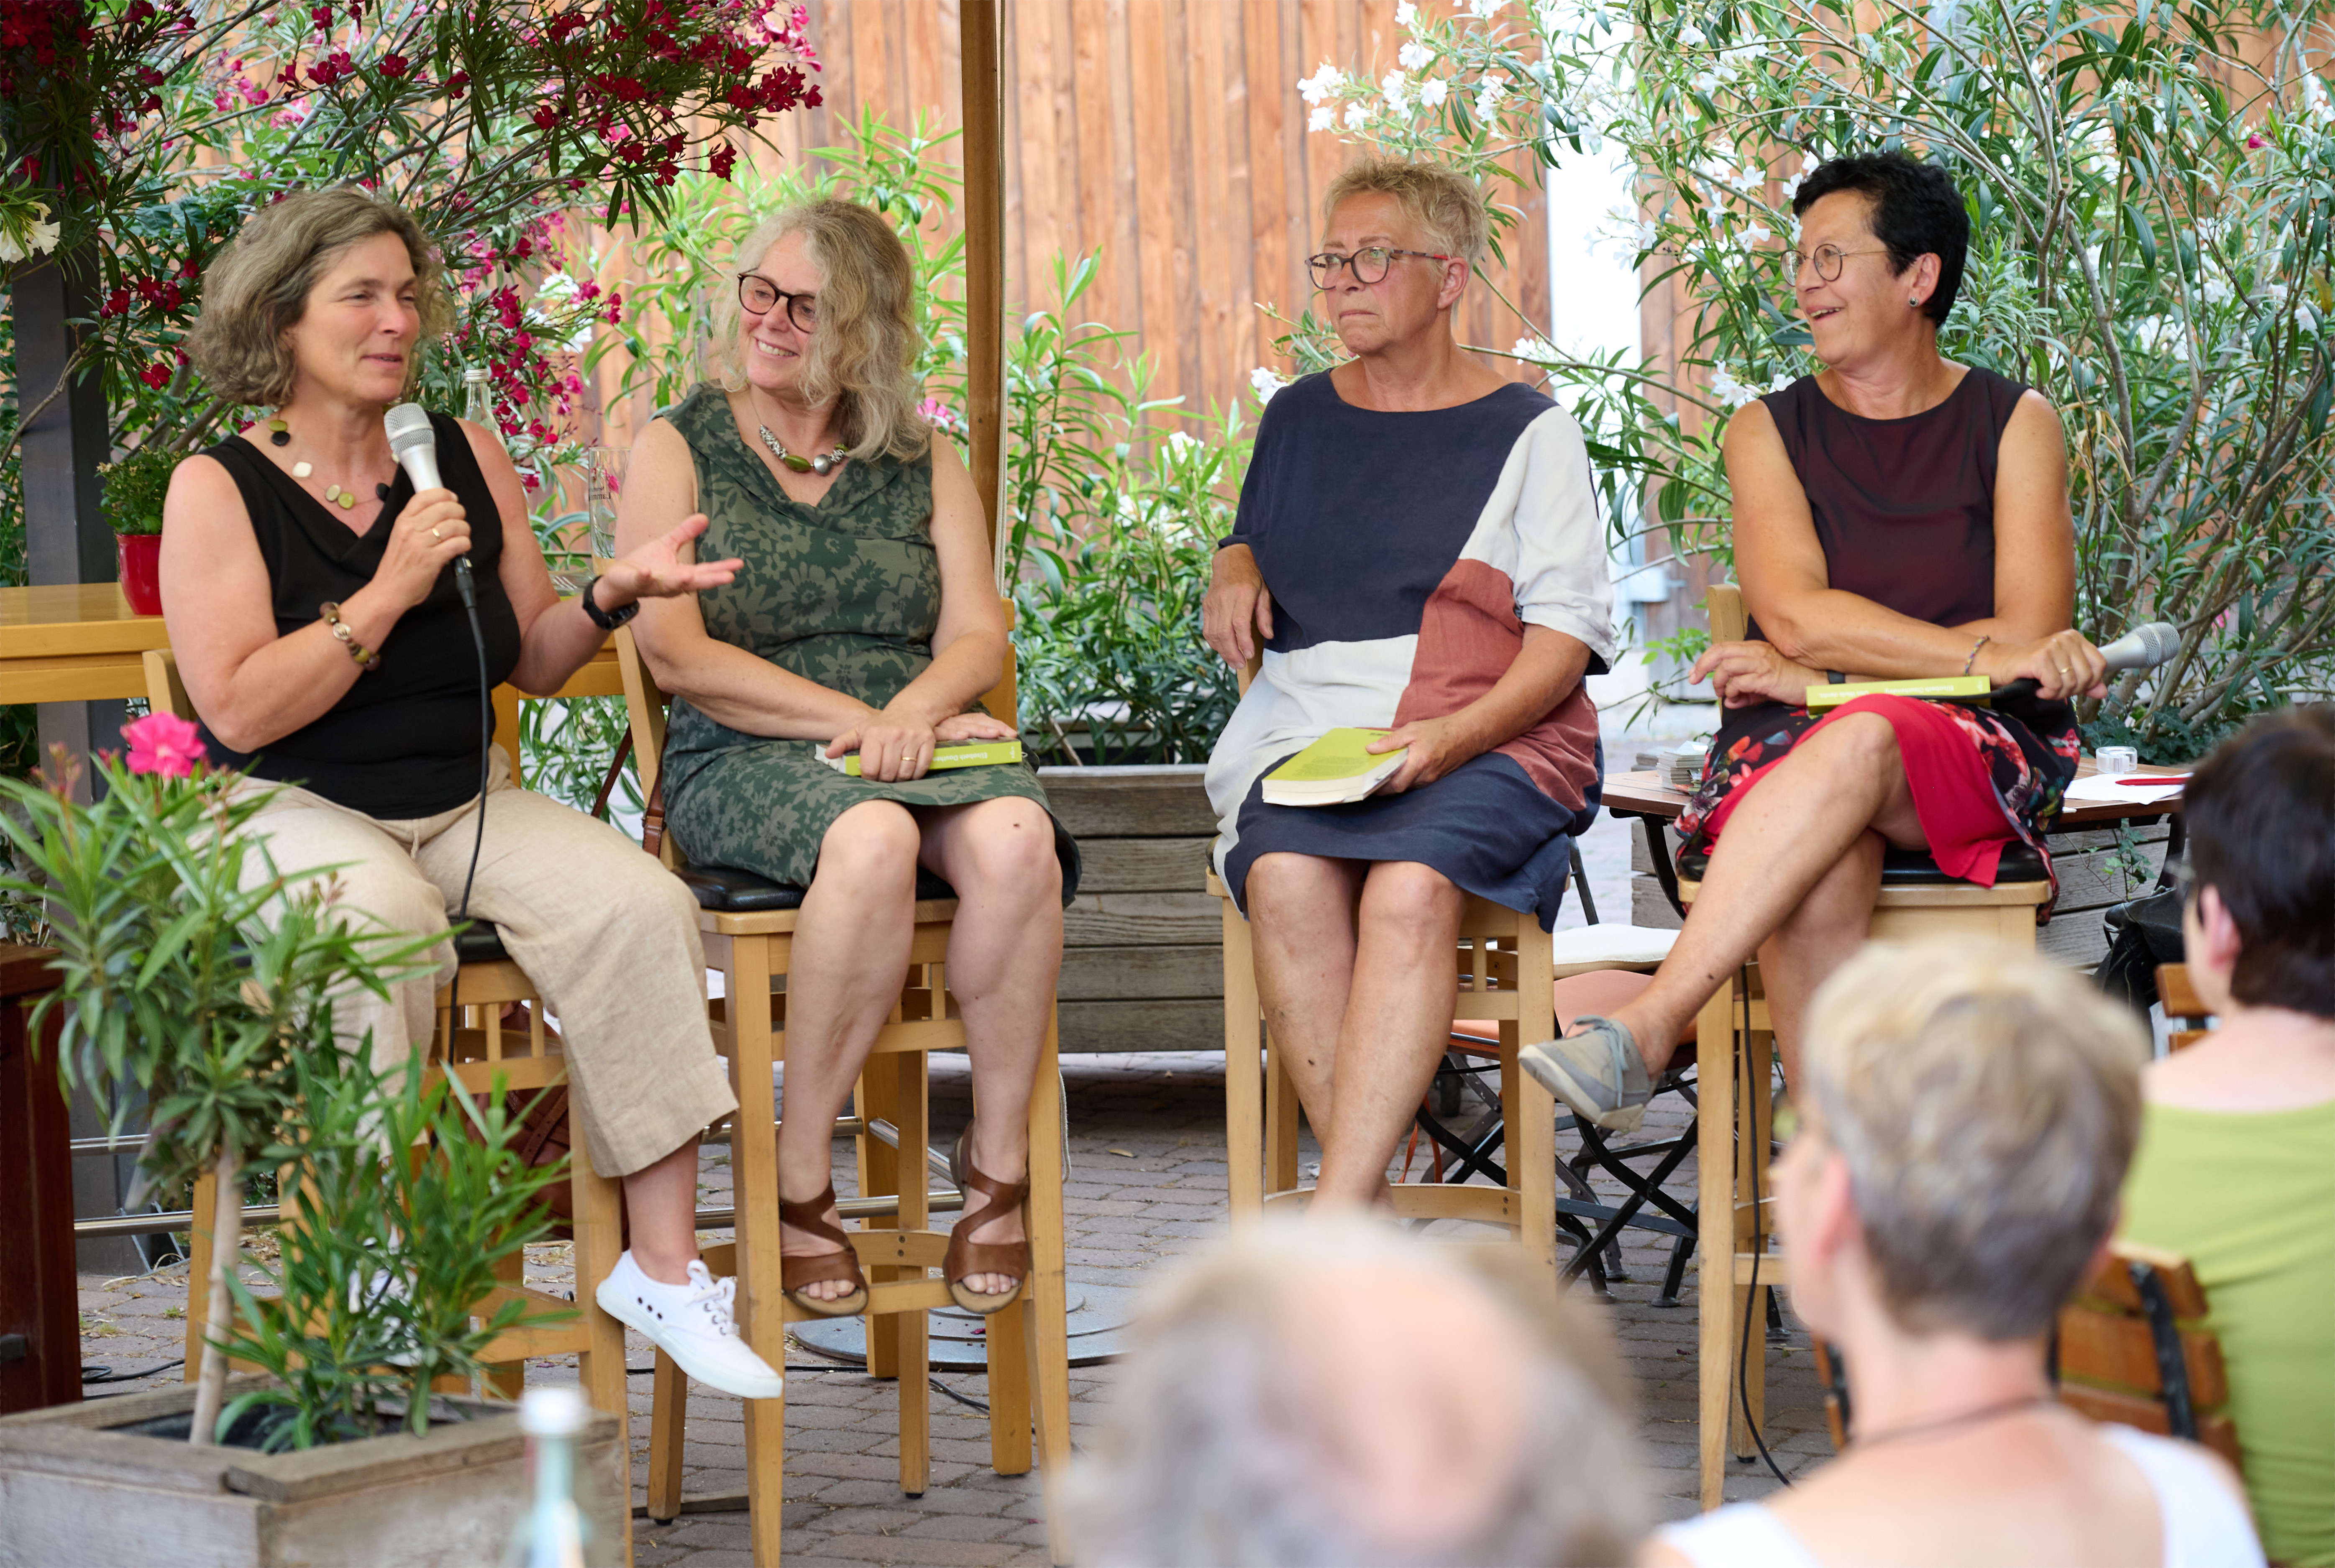 Bild von MdL Kerstin Celina, Bezirksrätin Christina Feiler, Marion Reuther, Ilse Gebhardt-Gögercin, gemeinsam auf Stühle sitzend, mit Büchern in der Hand. Kerstin Celina hat ein Mikrofon in der Hand, die anderen drei Frauen hören ihr gespannt zu.